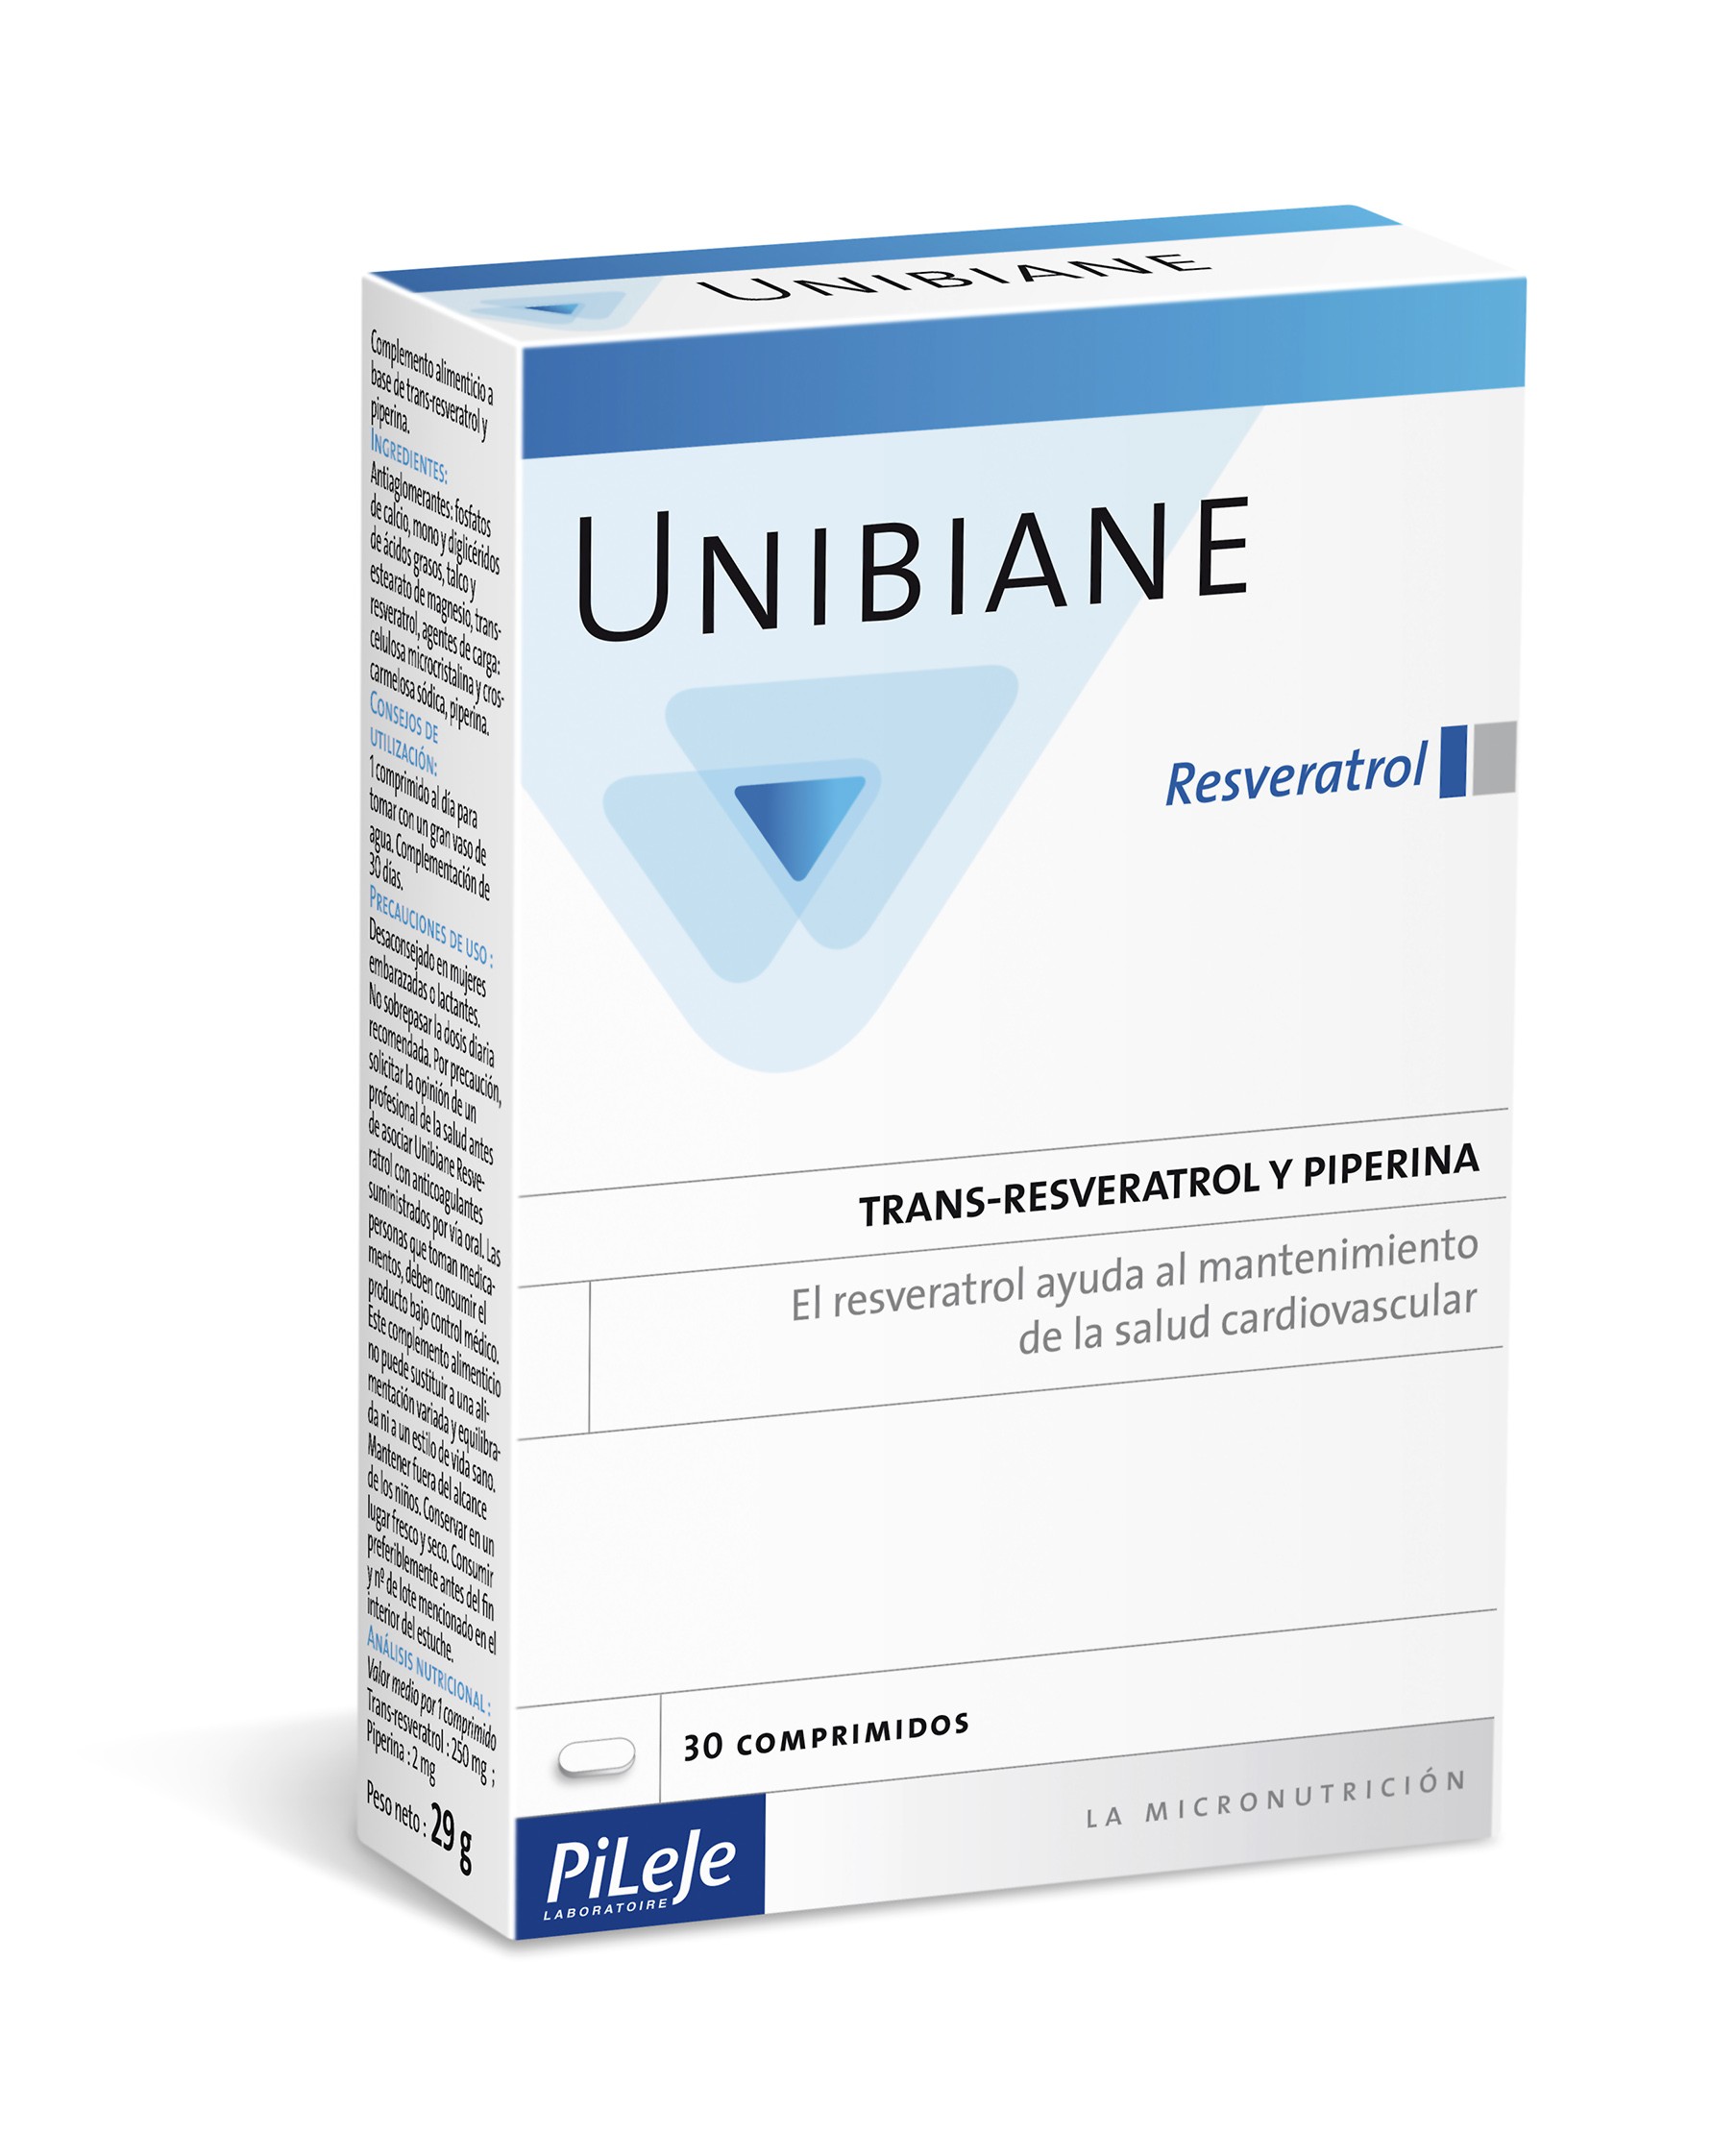 UNIBIANE Resveratrol Pileje, 30 cápsulas.